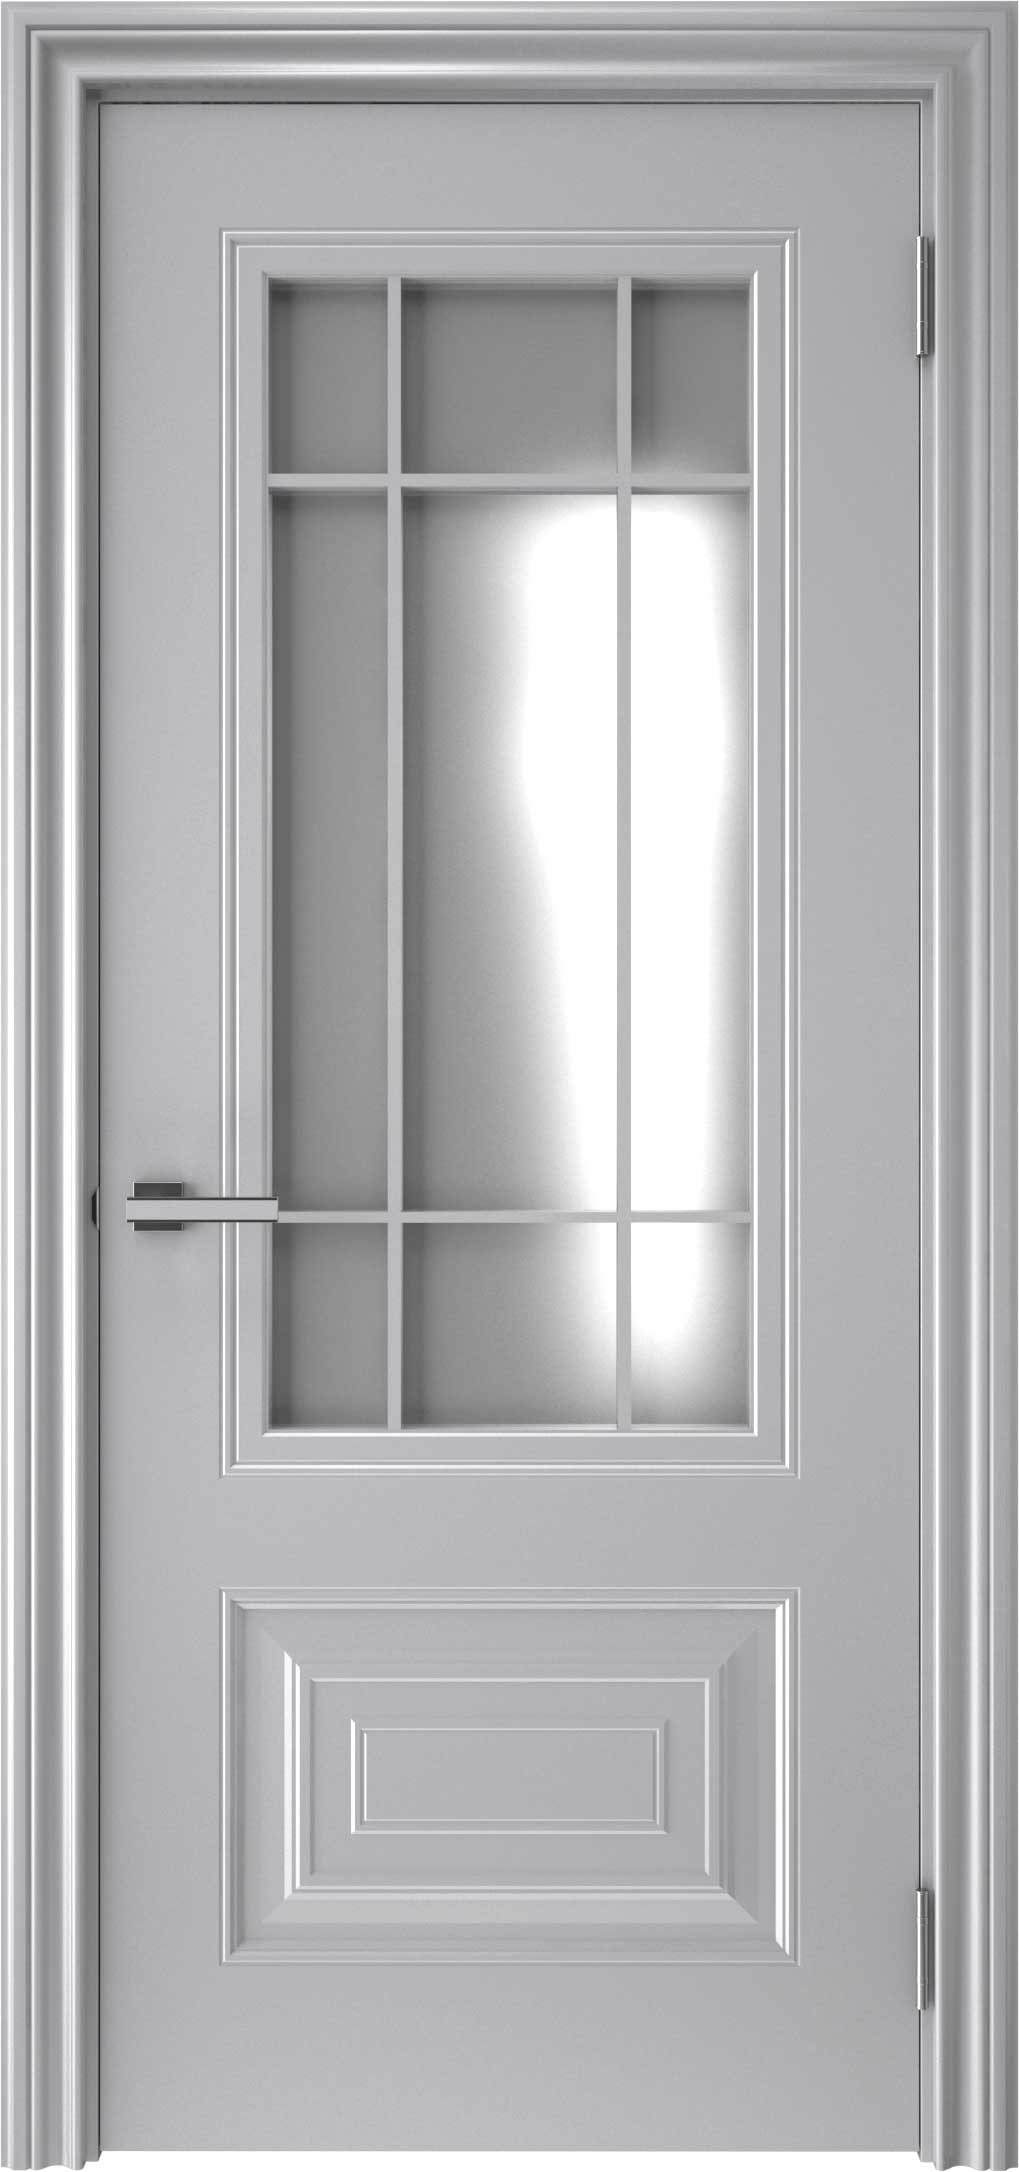 Двери крашеные (Эмаль) ТЕКОНА Смальта-46 со стеклом Серый ral размер 200 х 60 см. артикул F0000094995